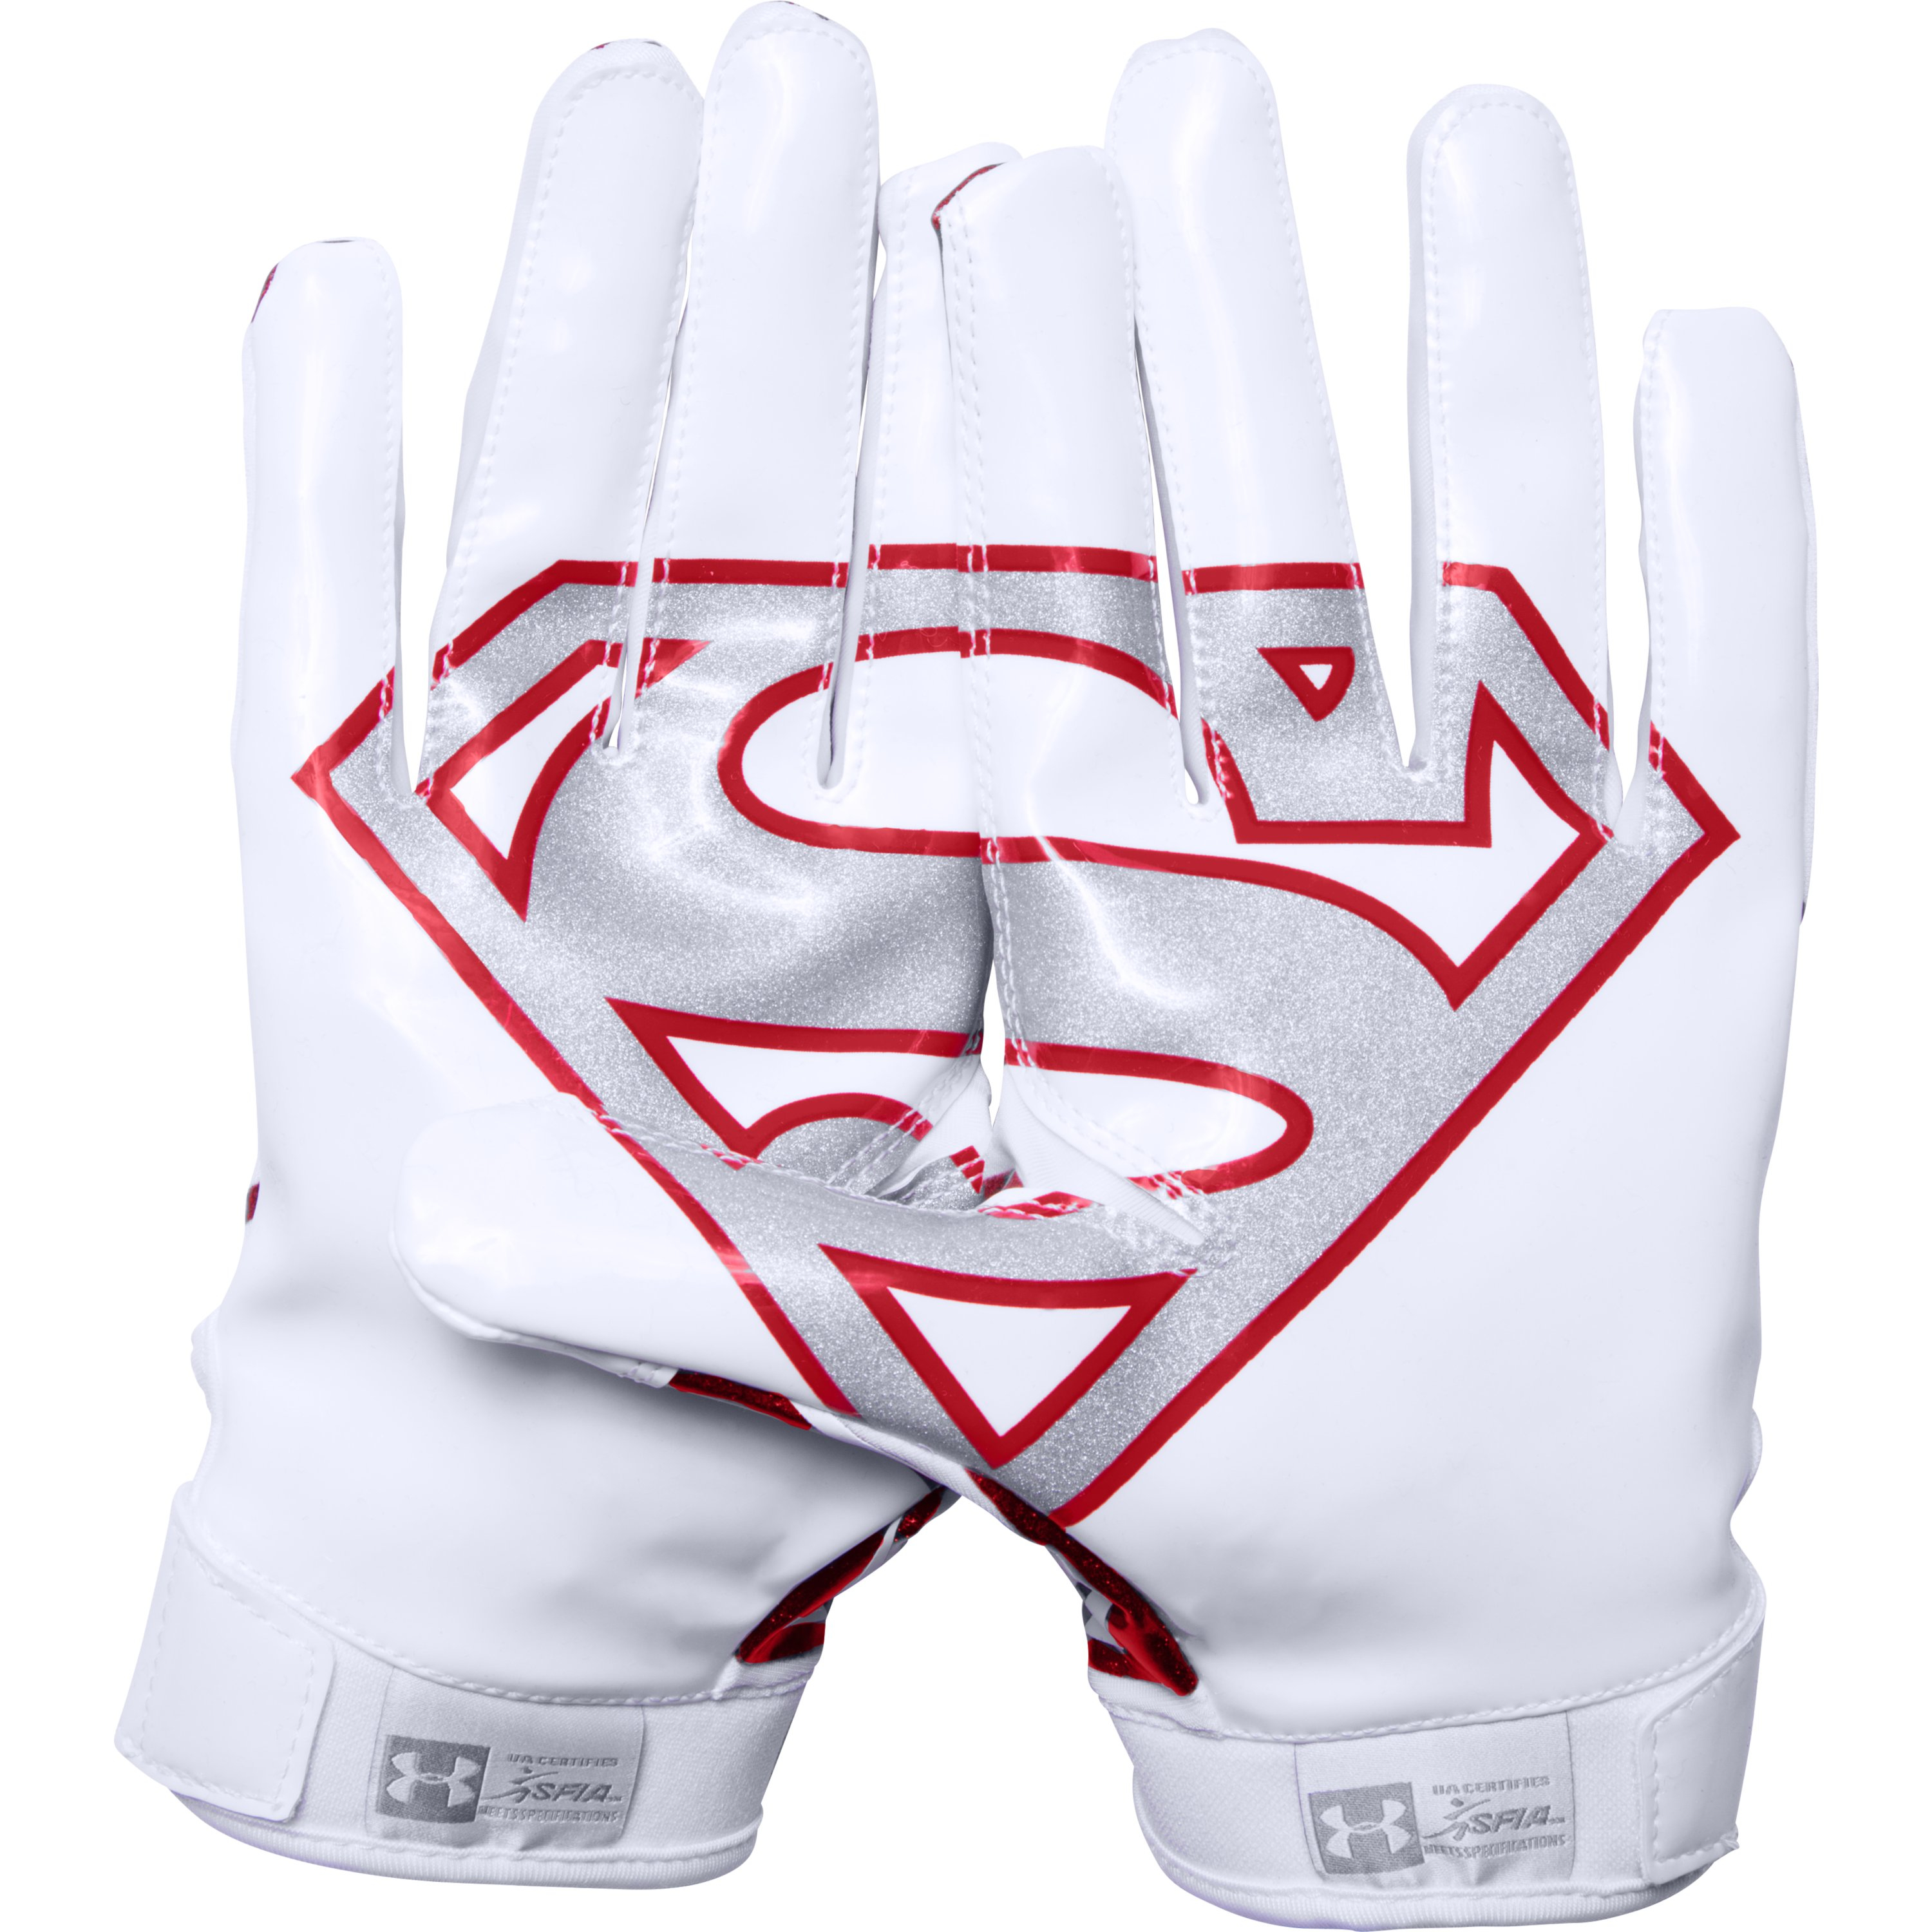 Under Armor Superman Gloves - KibrisPDR